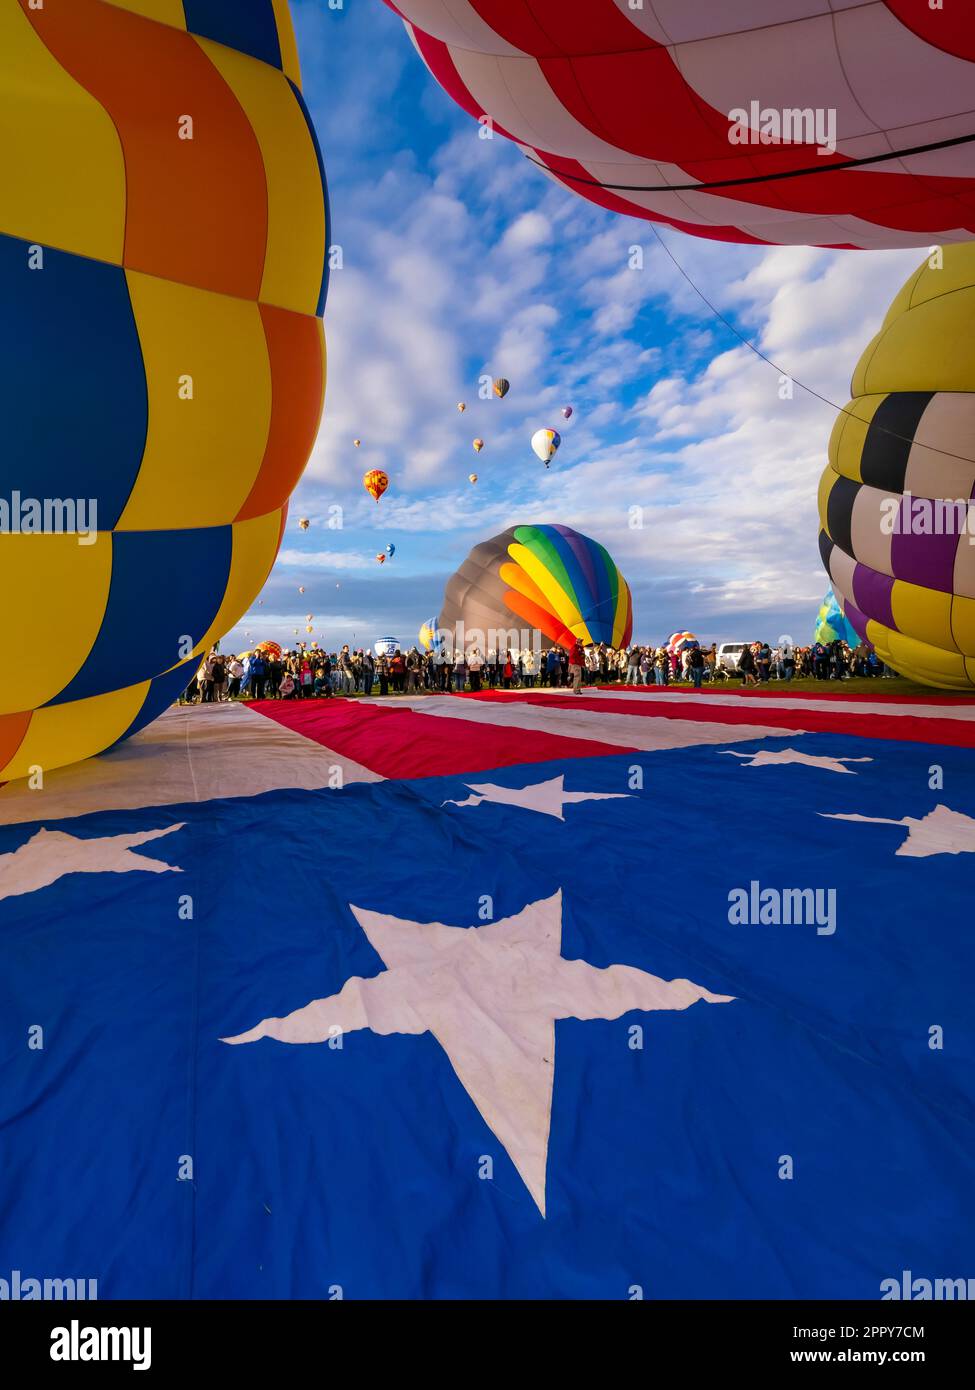 Ballons à air chaud se levant dans le ciel, ascension de masse, Albuquerque International Balloon Fiesta, Nouveau-Mexique Banque D'Images